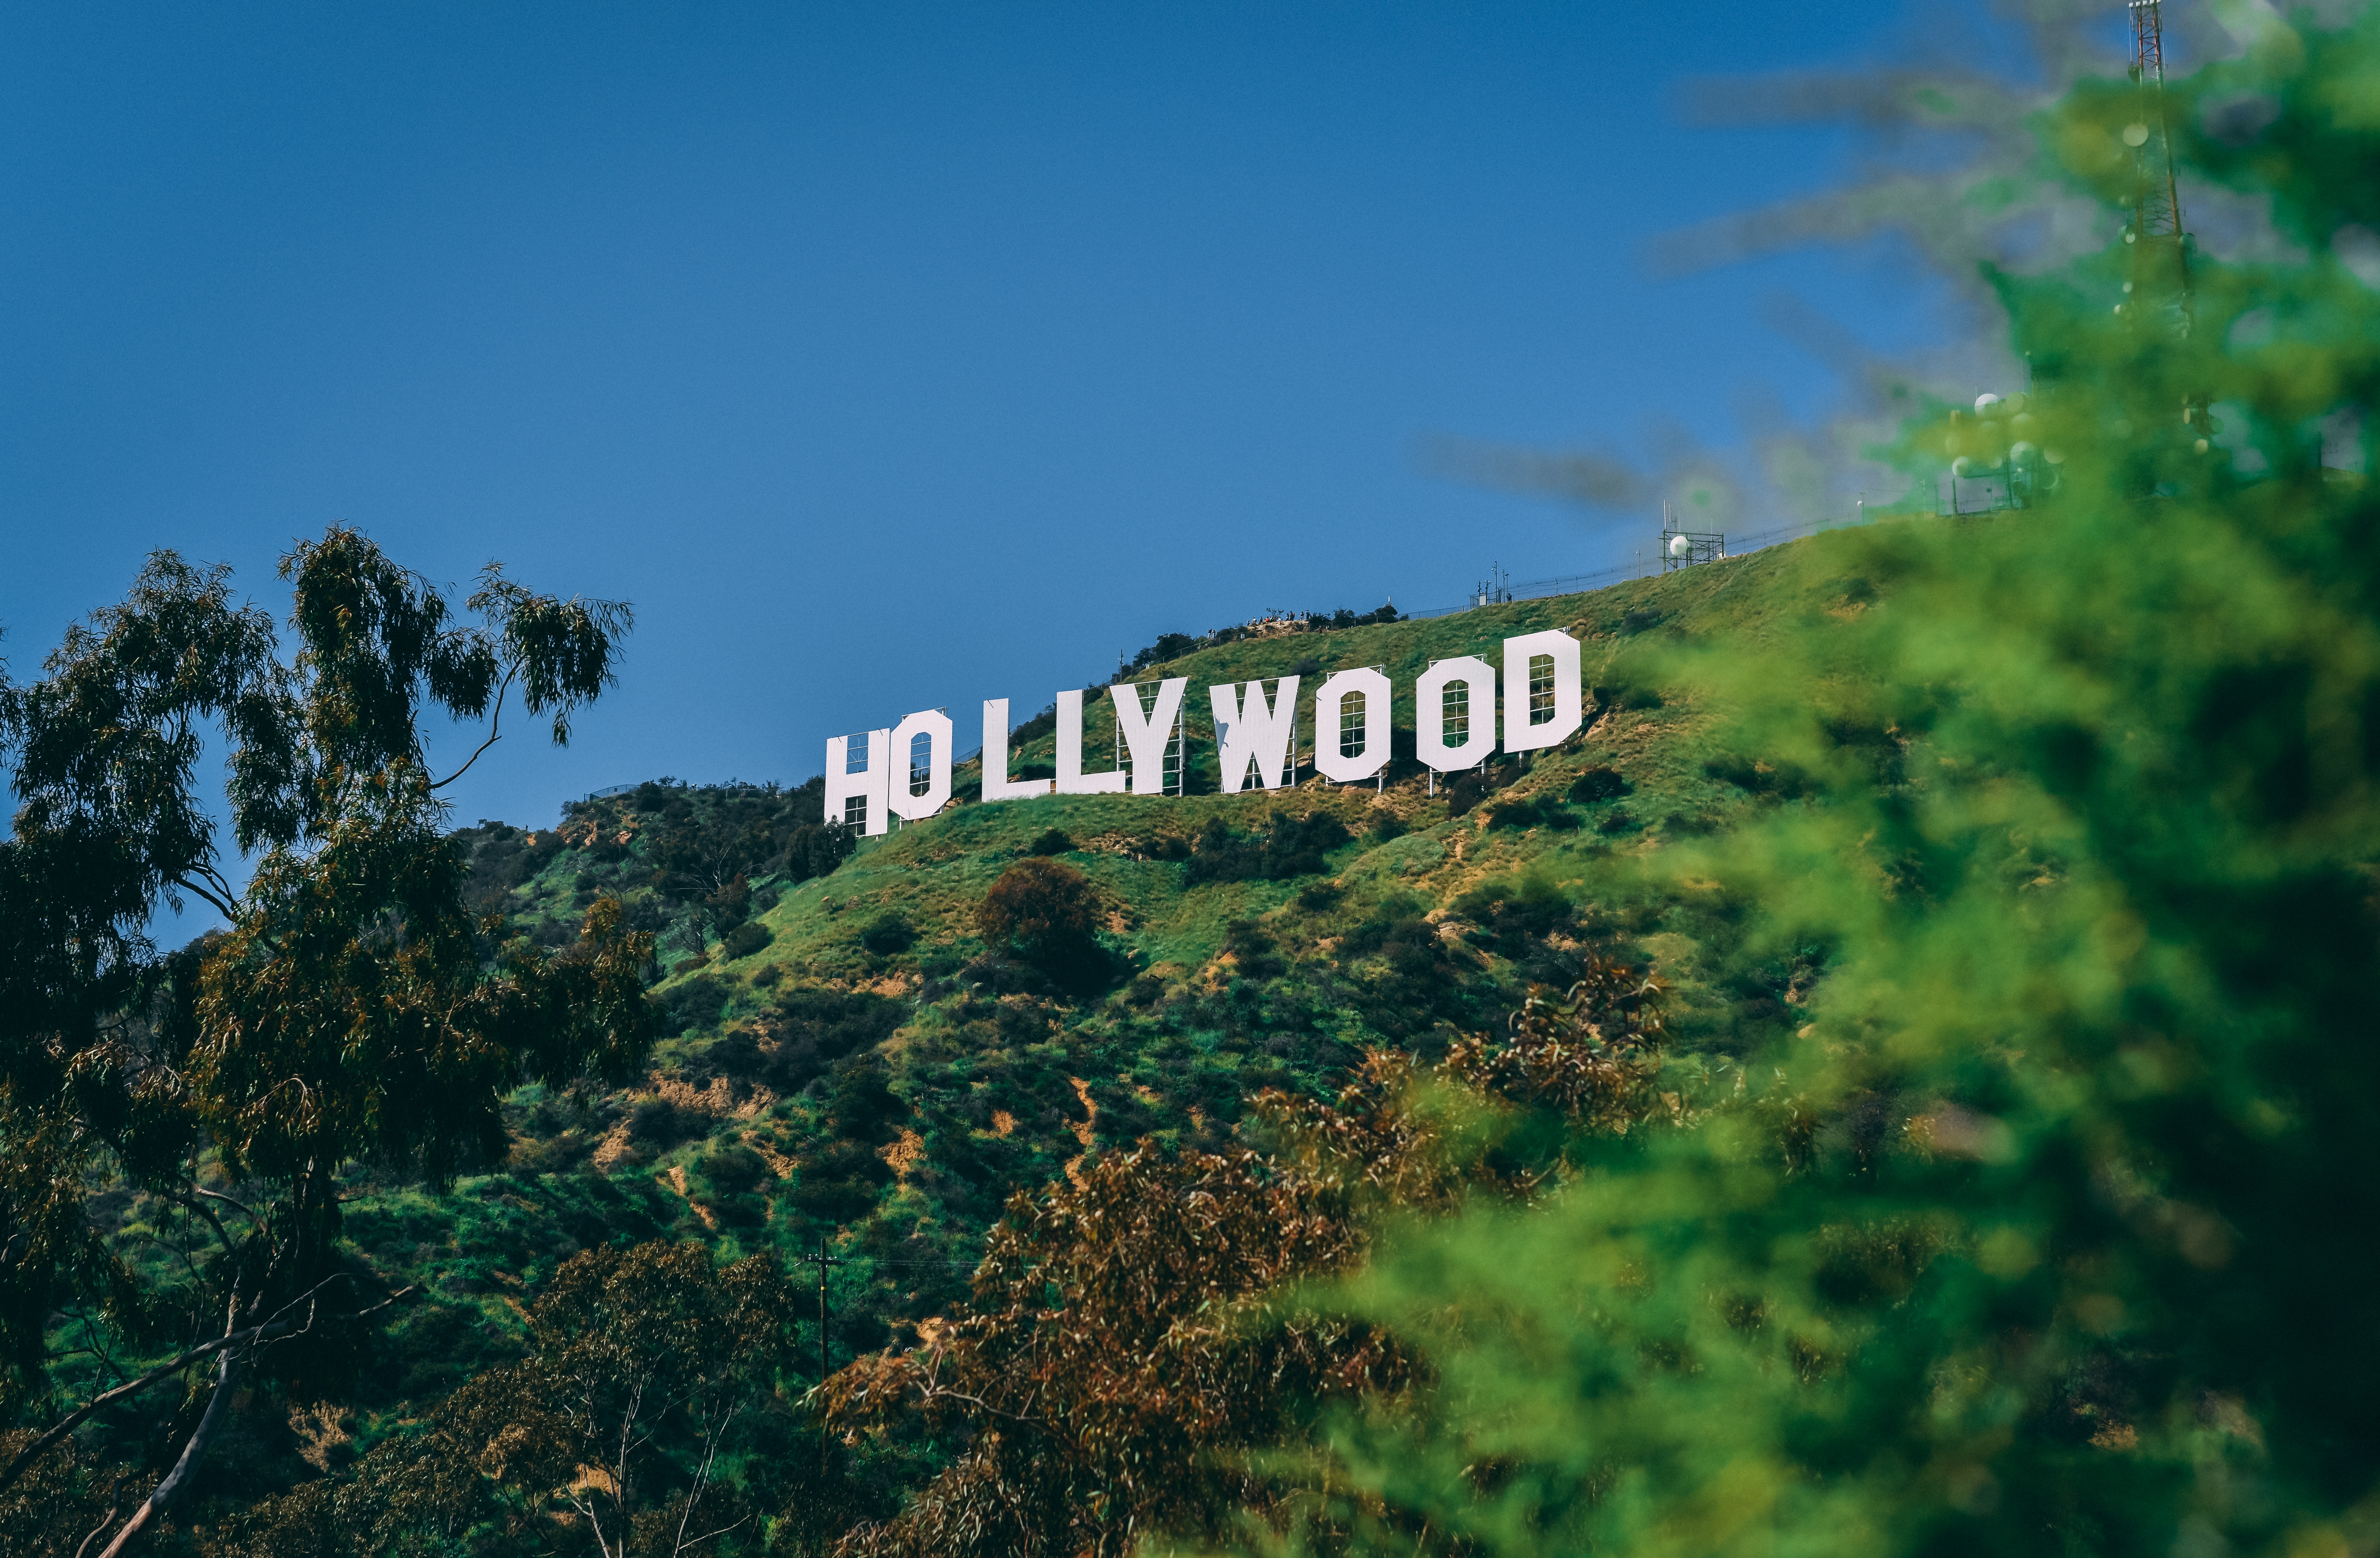 Machen Sie eine Tour durch Hollywood für ein unvergessliches Sommererlebnis 
Los Angeles ab 110$